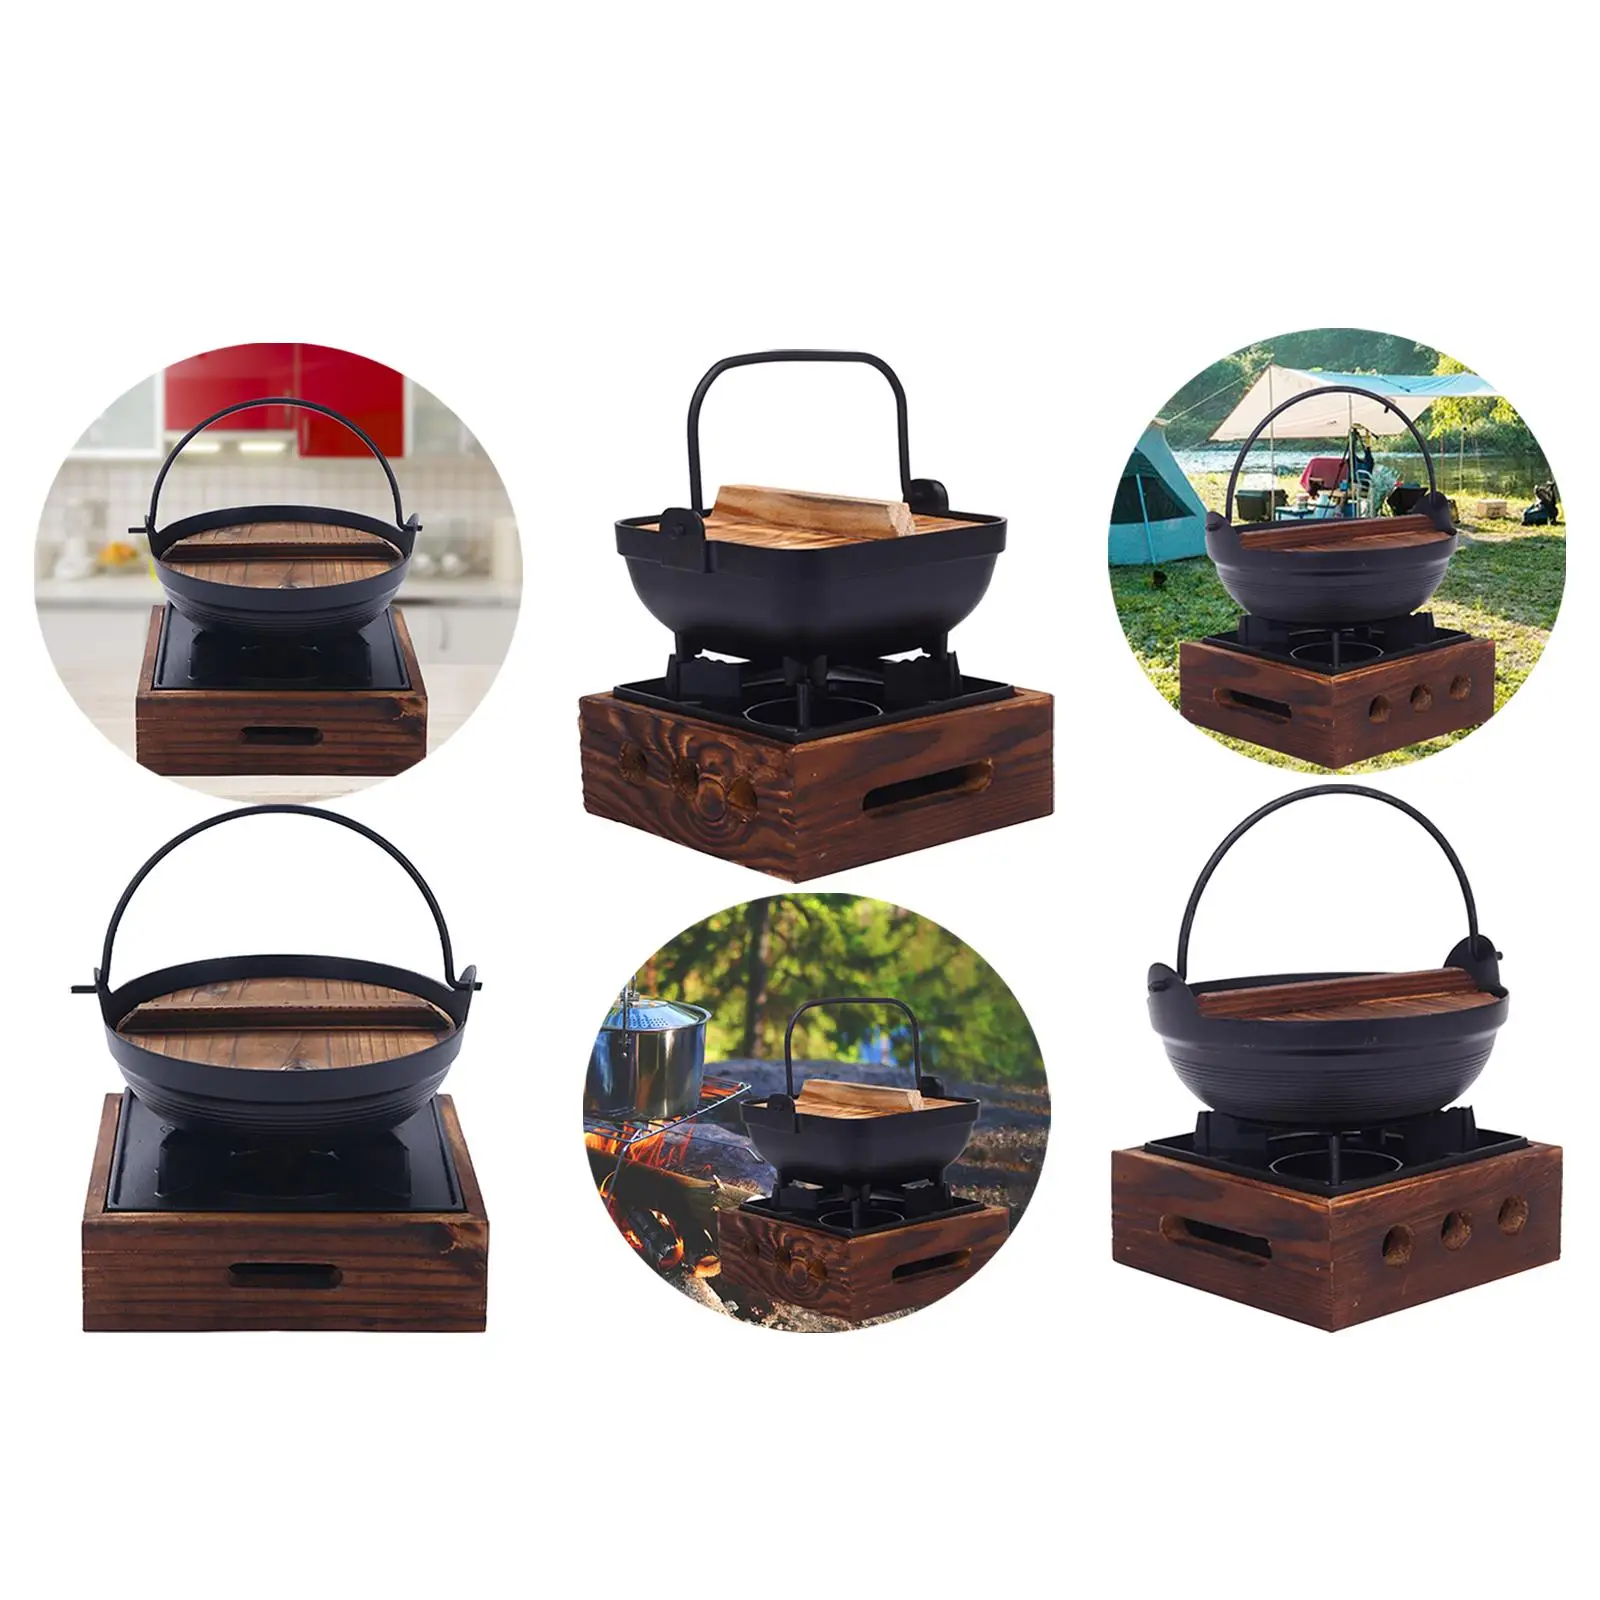 https://ae01.alicdn.com/kf/S78e87edc1cba465ab7991aa4c2e016f11/Cast-Iron-Japanese-Style-Sukiyaki-Nabe-Shabu-Hot-Pot-w-Wood-Lid-Stove.jpg